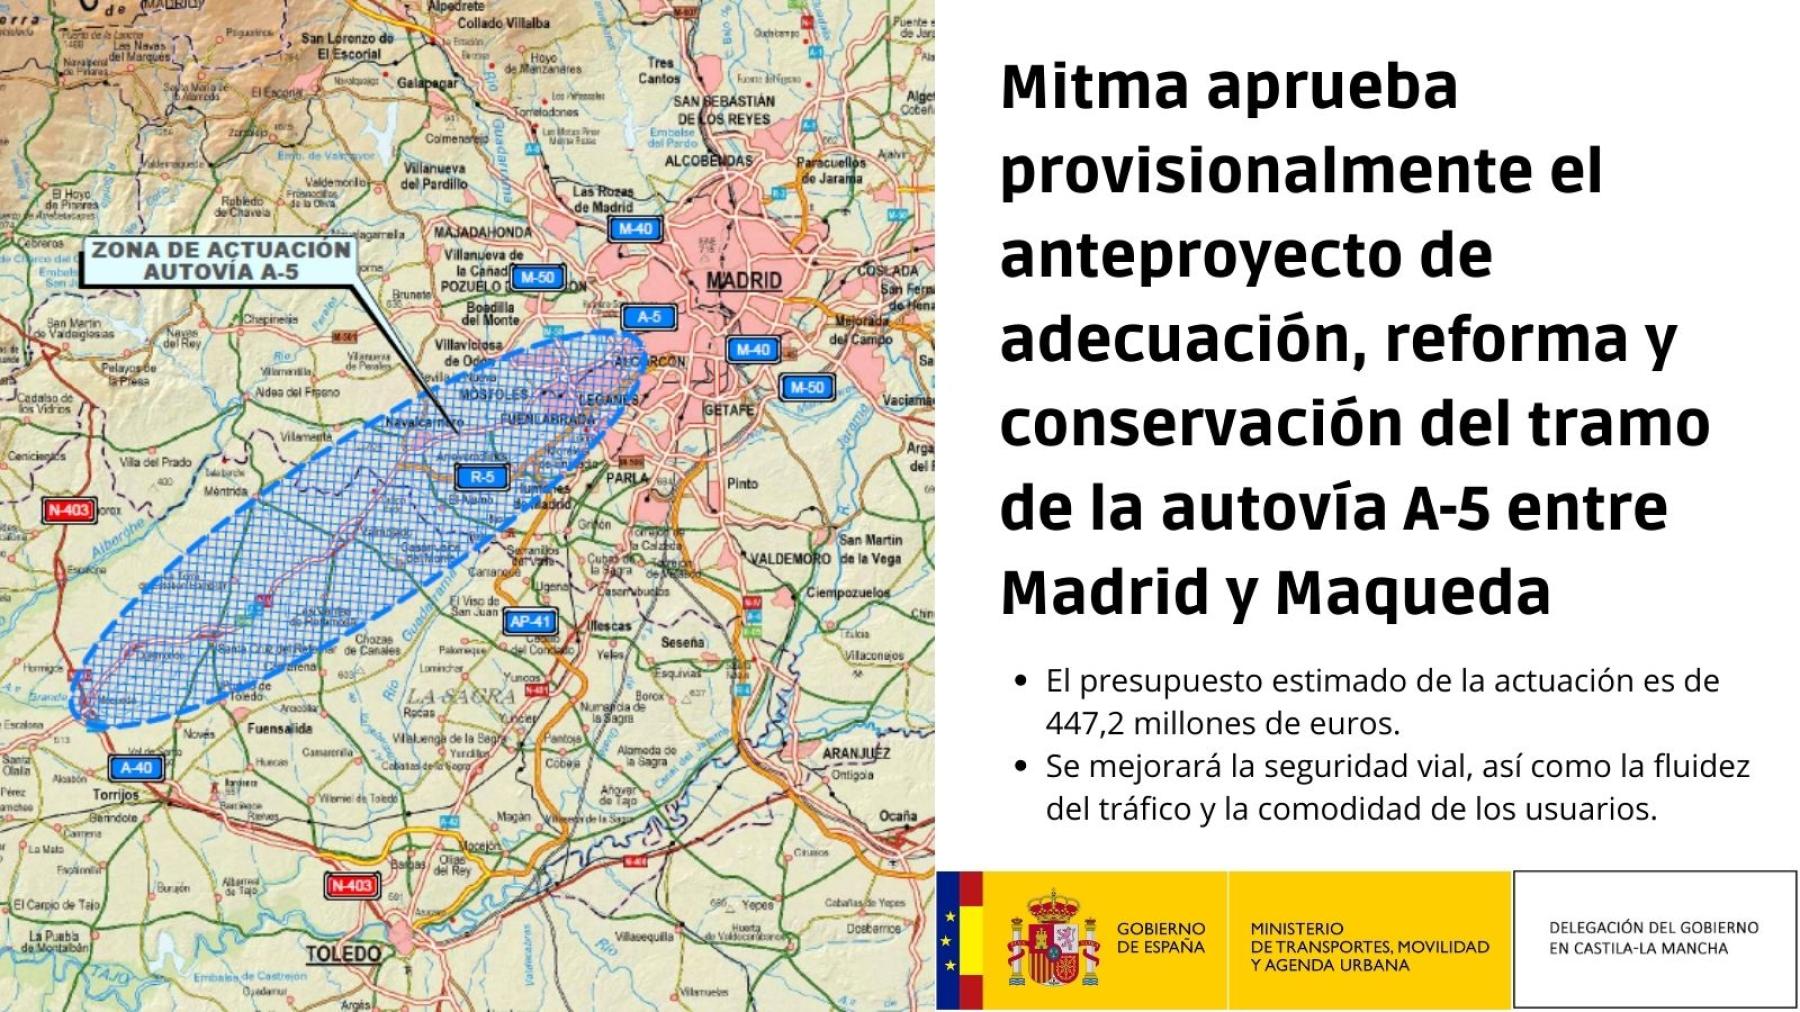 Mitma aprueba provisionalmente el anteproyecto de adecuación, reforma y conservación del tramo de la autovía A-5 entre Madrid y Maqueda